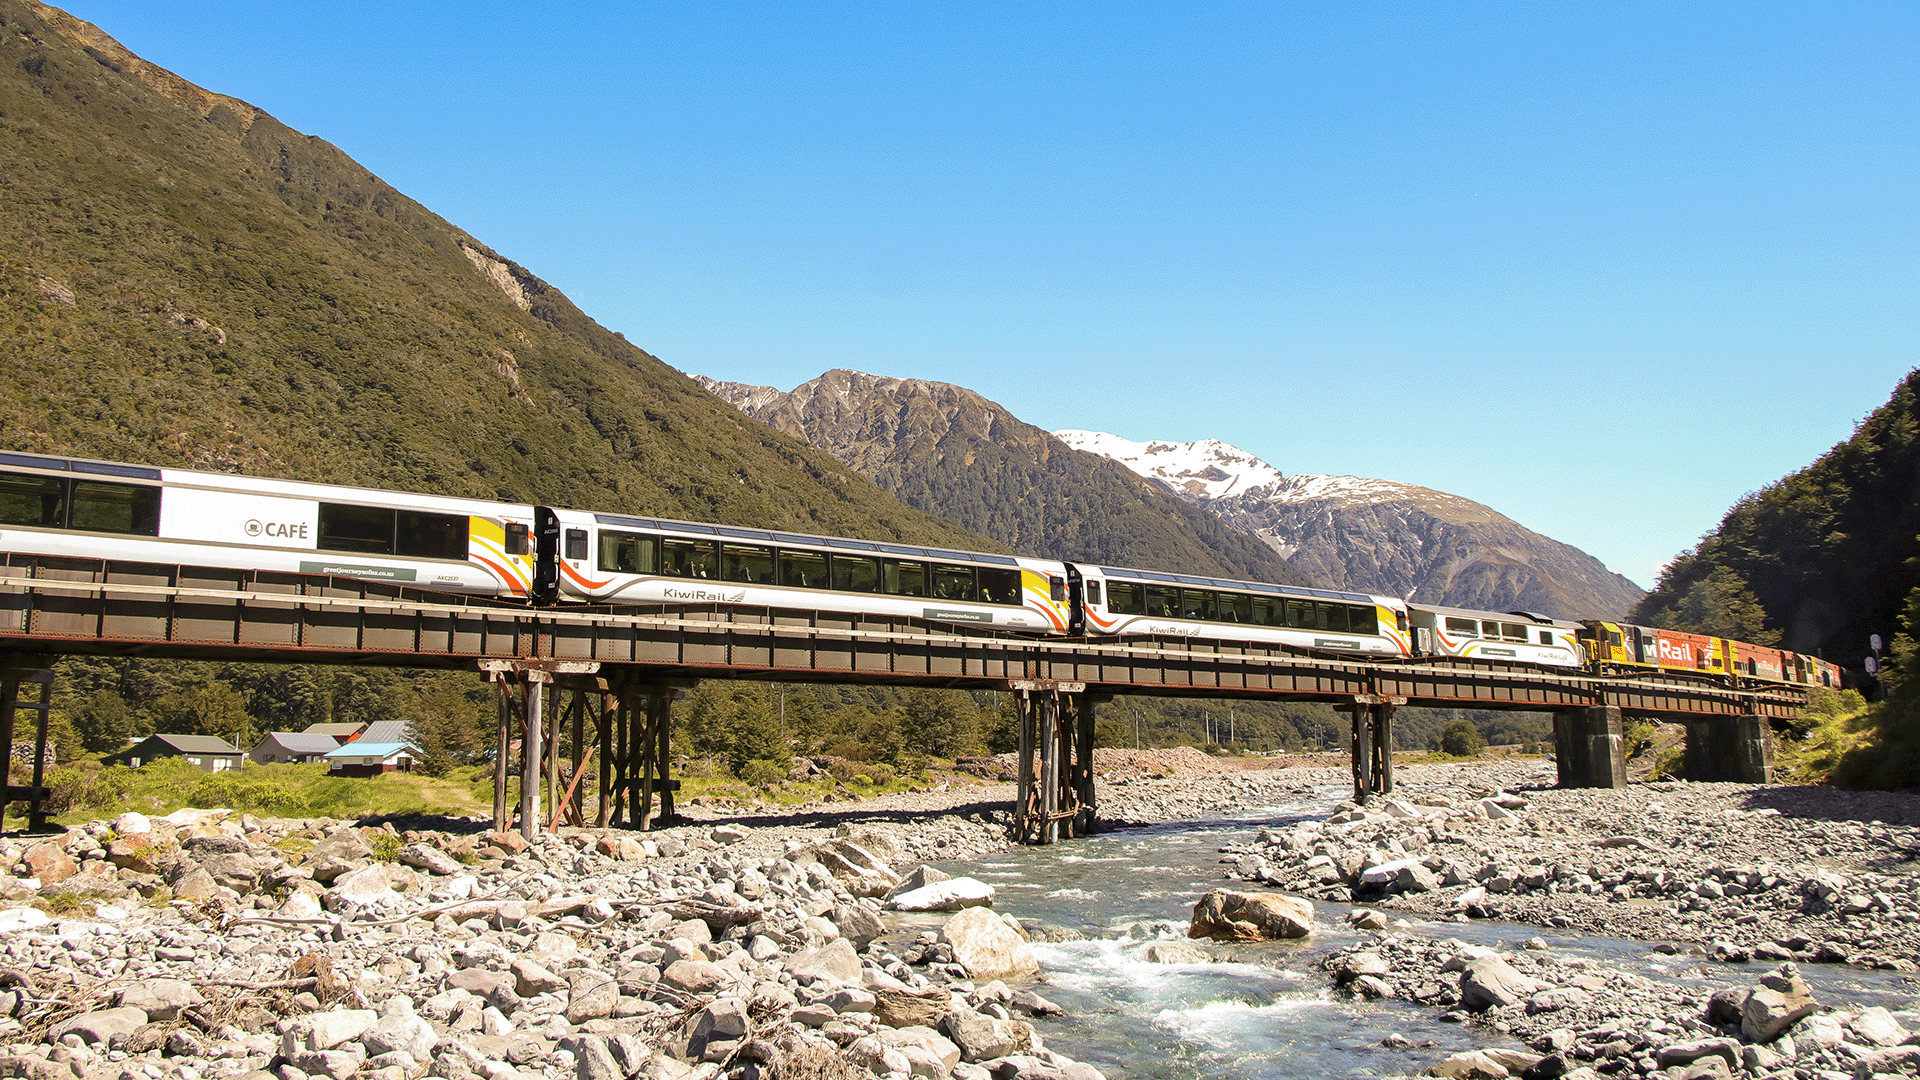 TranzAlpine Scenic Train